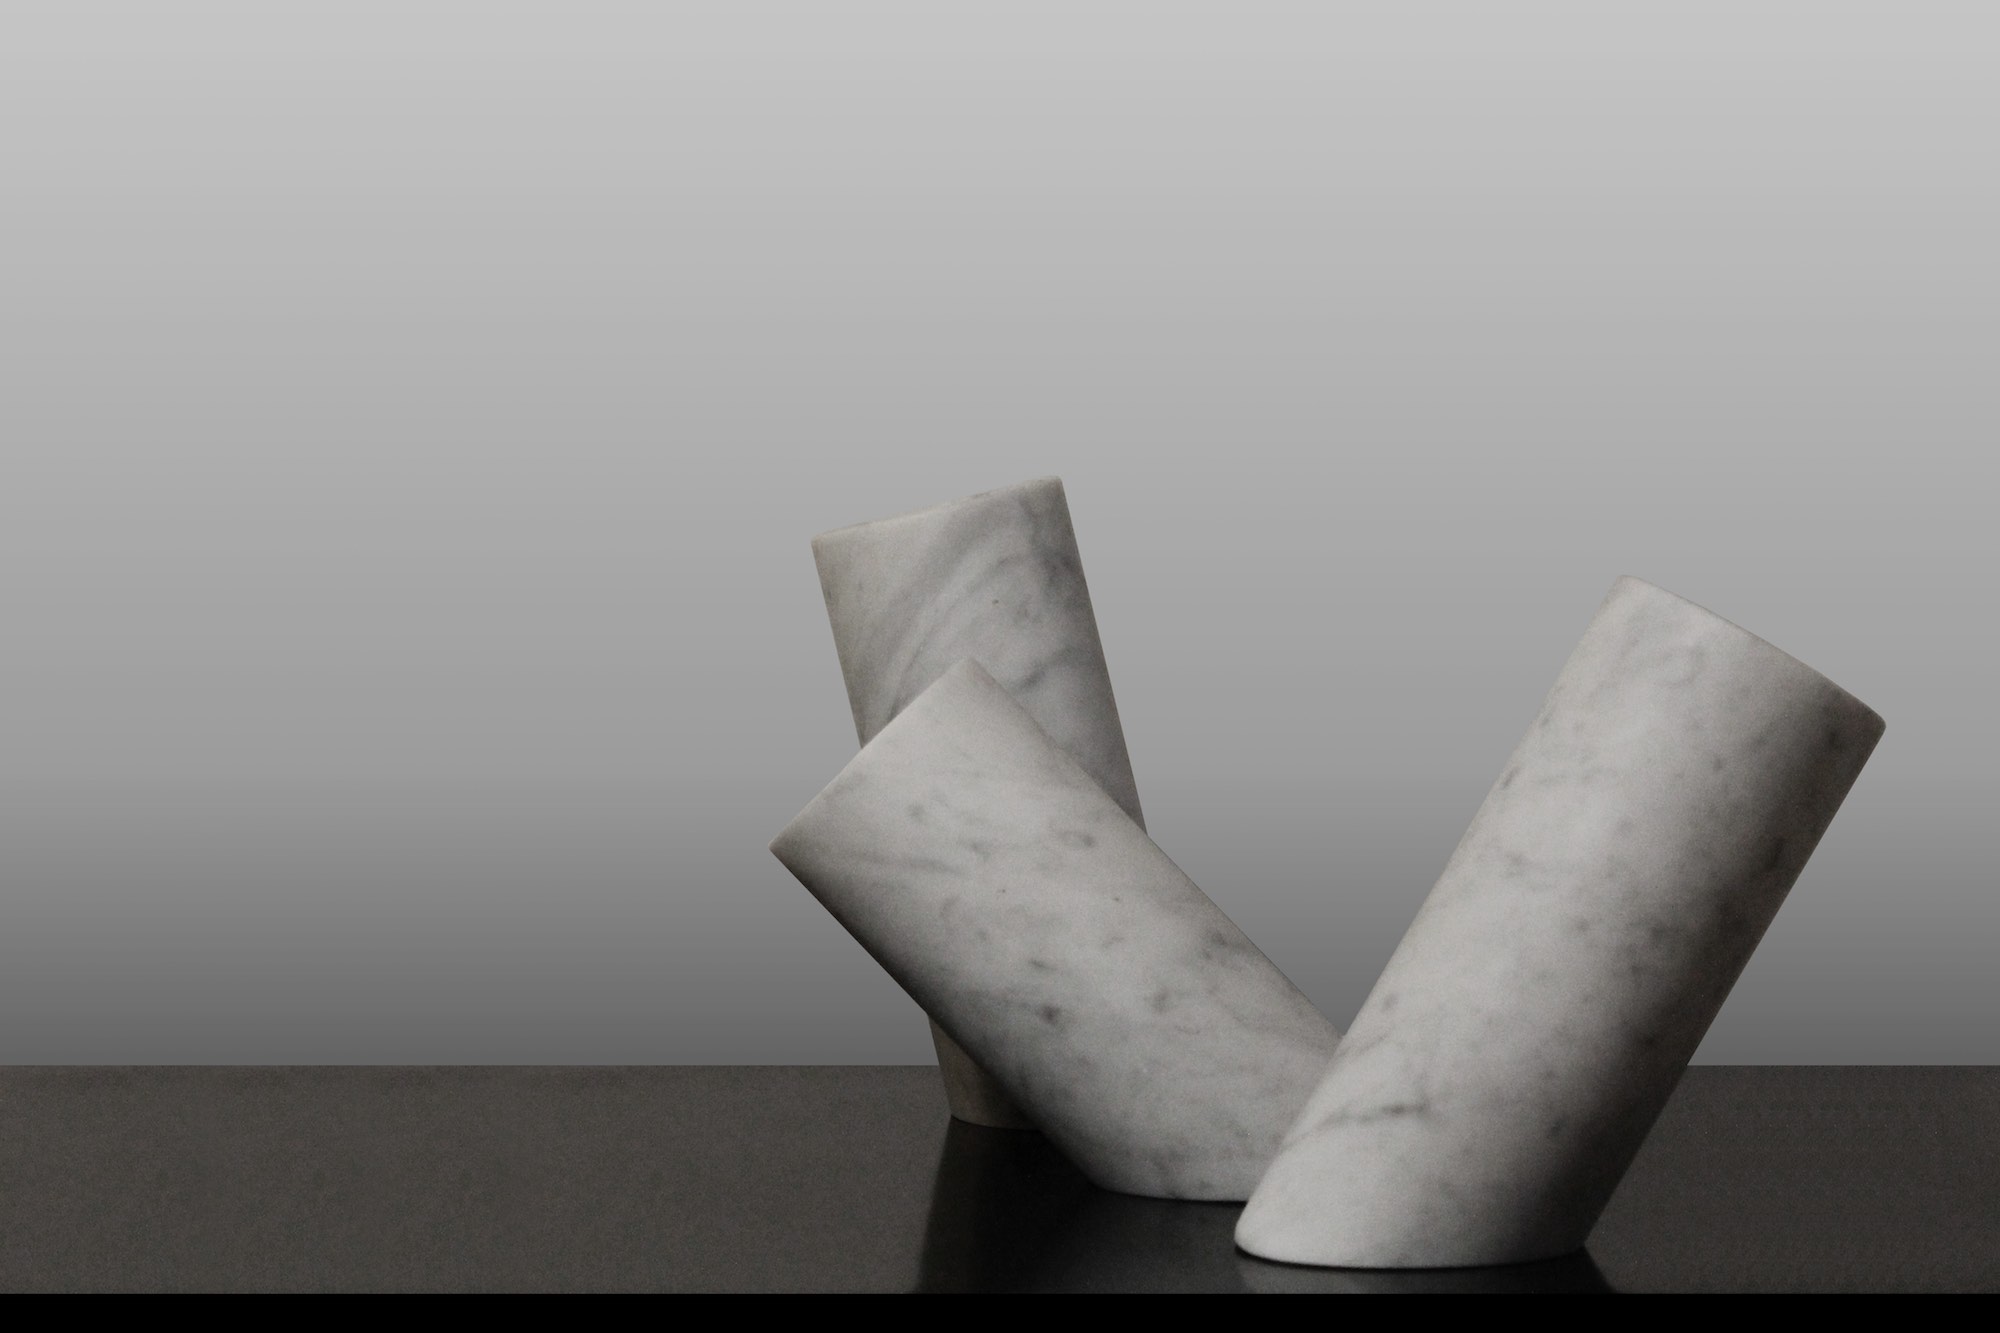 Intervista a Moreno Ratti è uno sculture toscano di fama internazionale, nato a Carrara che ha fatto del marmo il suo materiale prediletto